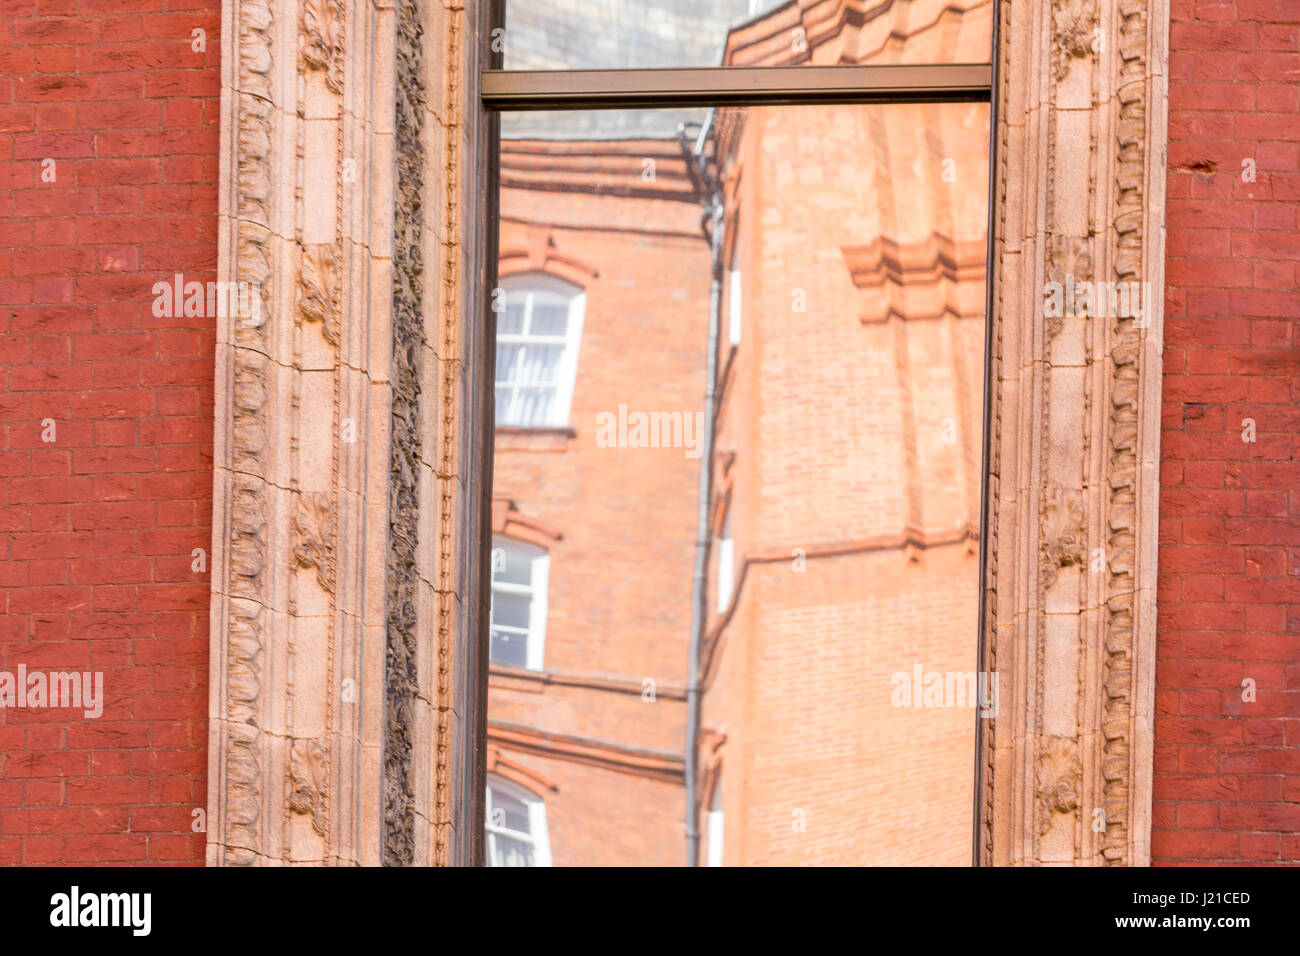 Reflektion von einem alten Backsteingebäude in London in einem Fenster mit kunstvollen Formen, London, England, Grossbritannien Stockfoto